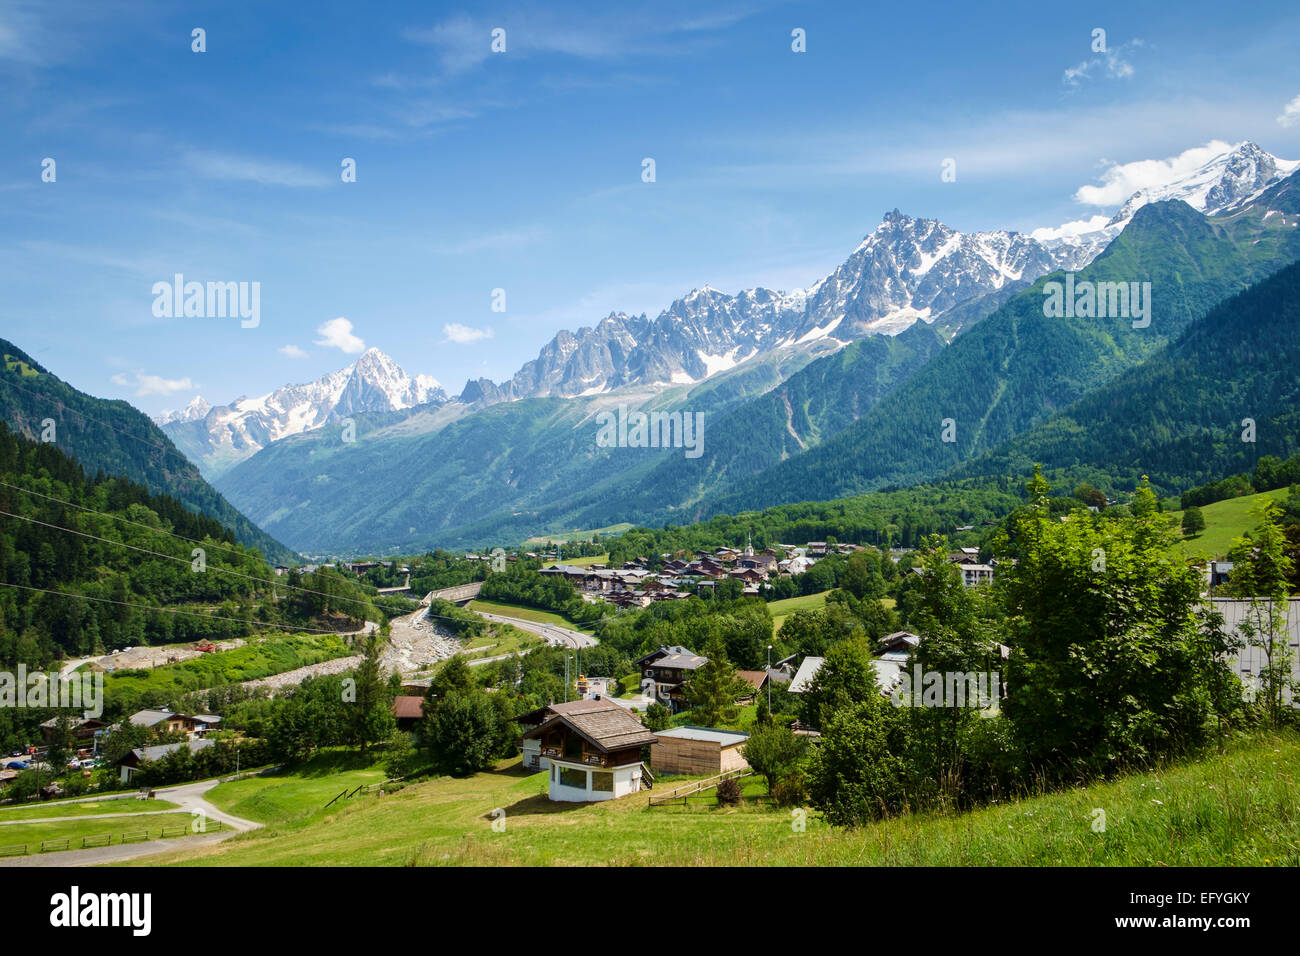 Les Houches Dorf im Tal von Chamonix mit den Aiguilles de Chamonix Bereich hinter sich, in der Nähe von Chamonix, Frankreich, Europa Stockfoto